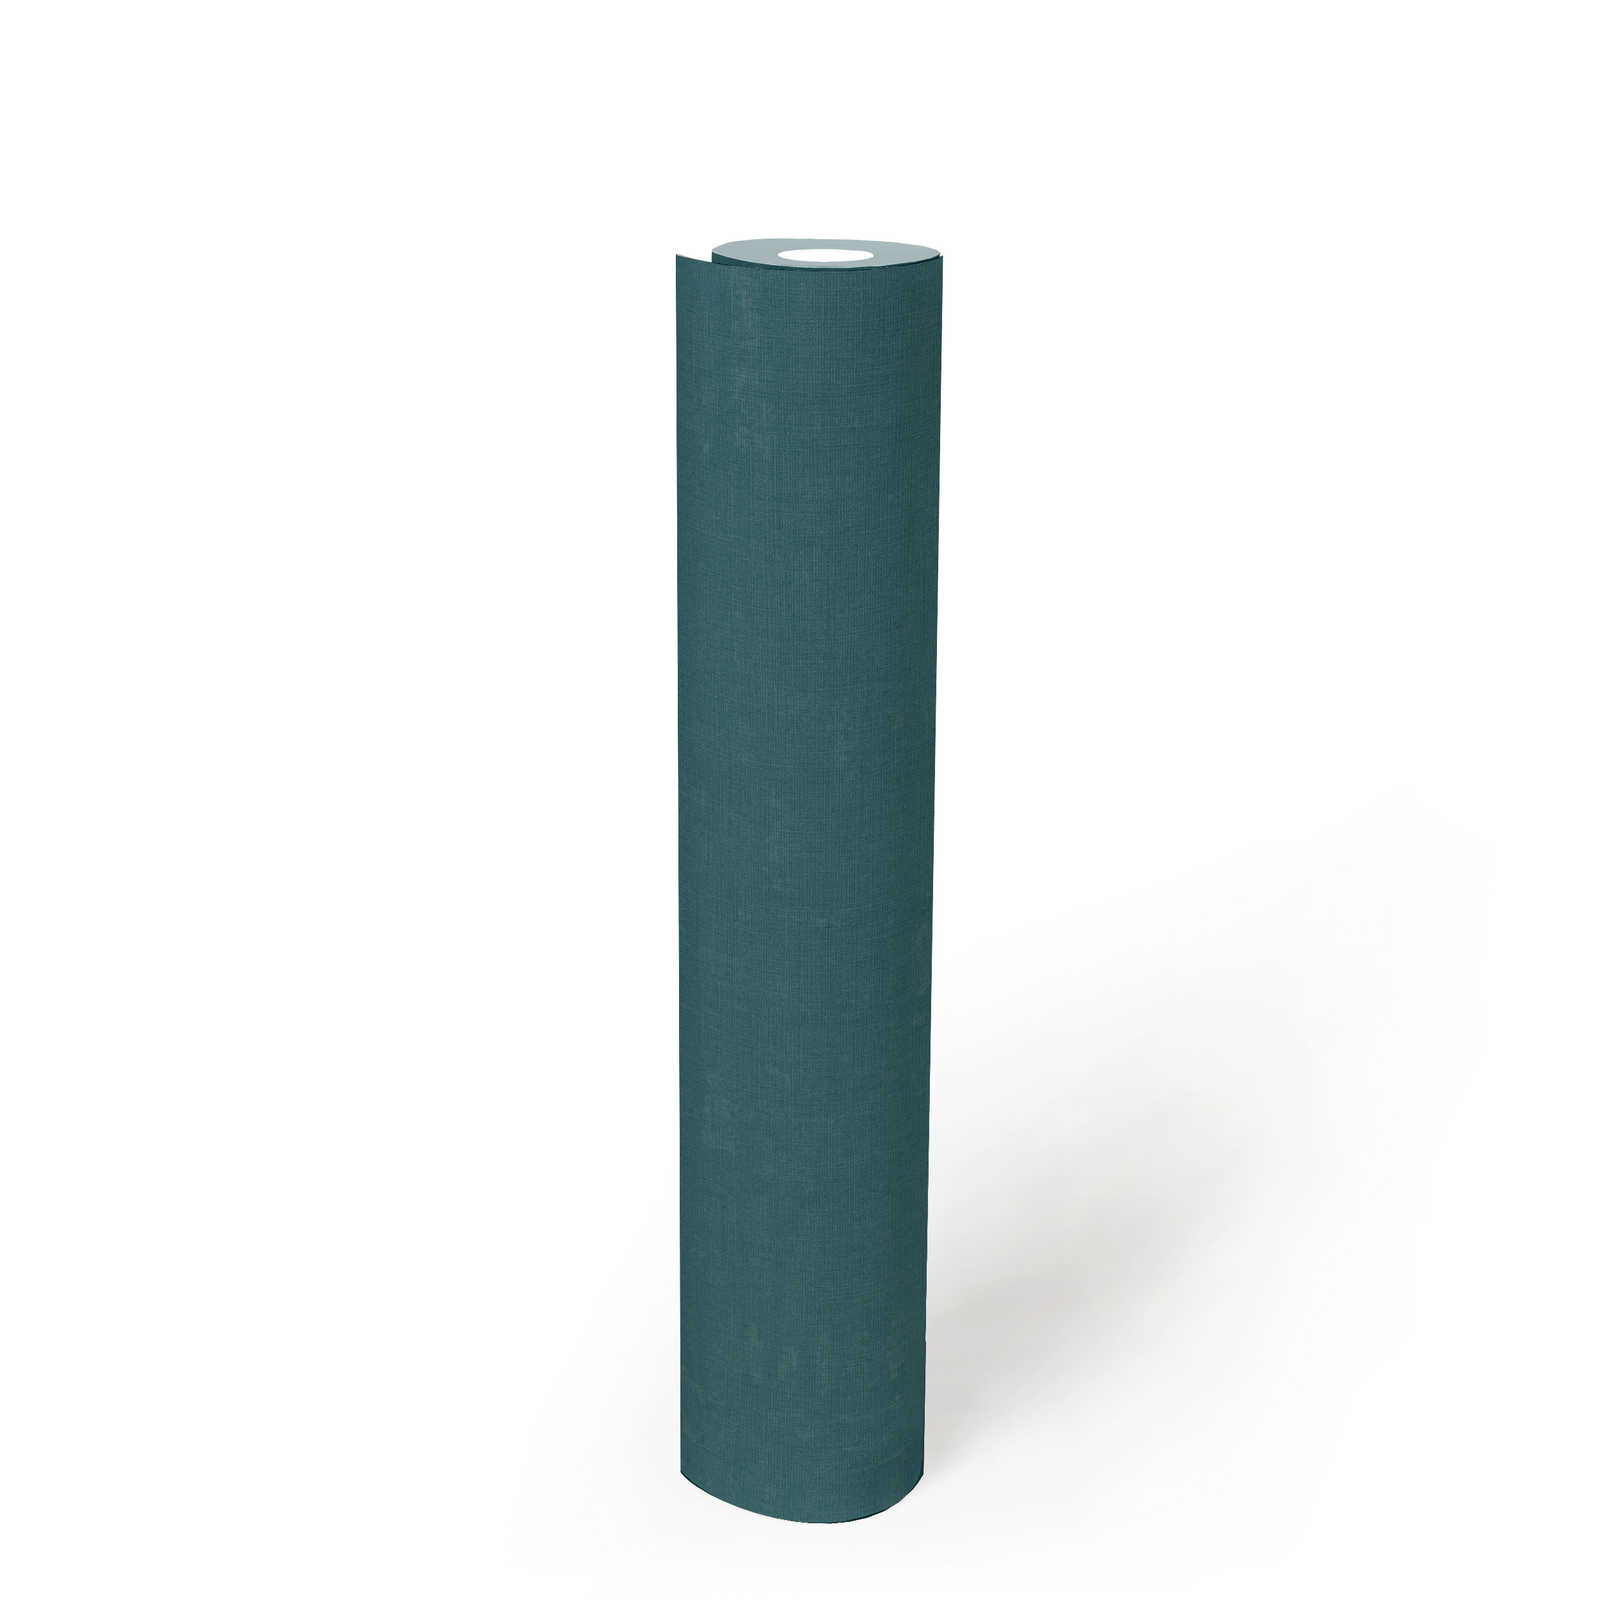             Vliesbehang effen met gevlekt effect - blauw, groen
        